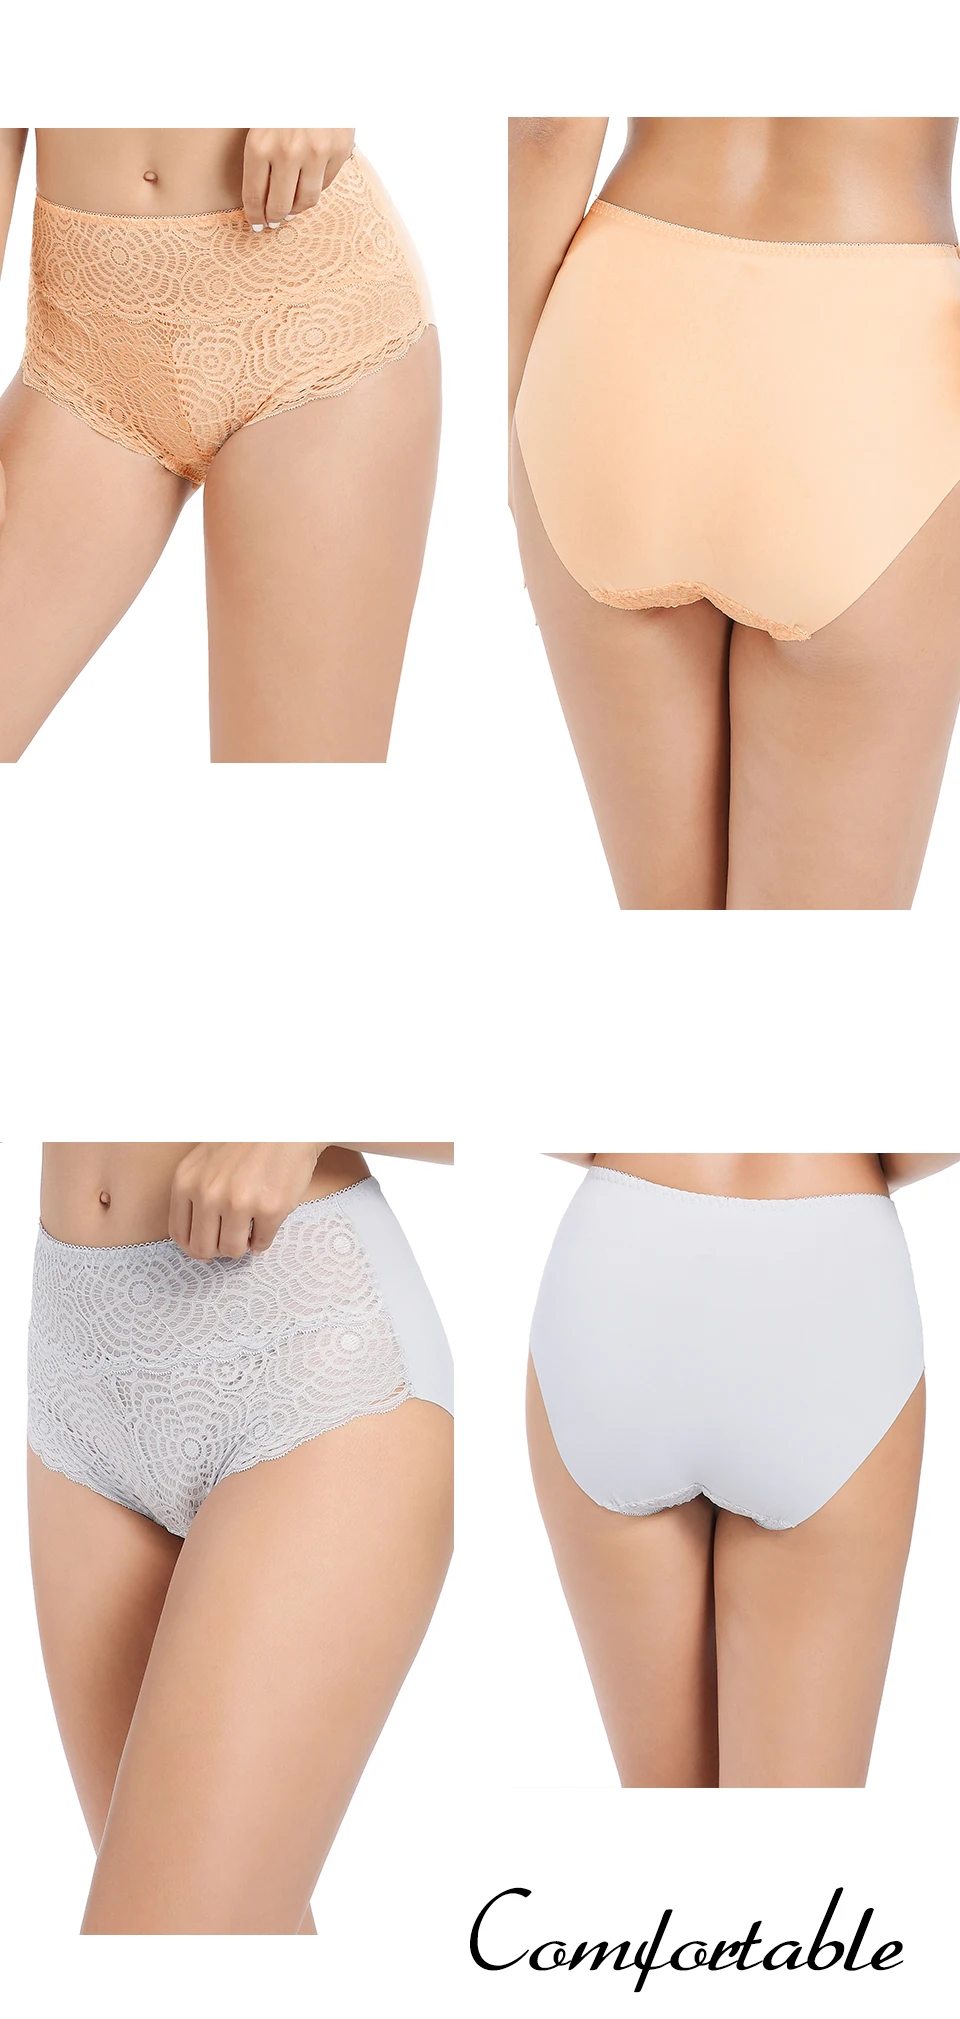 FallSweet Plus Size Panties for Women Sexy Lace Underwear High Waist B –  Wieblumen